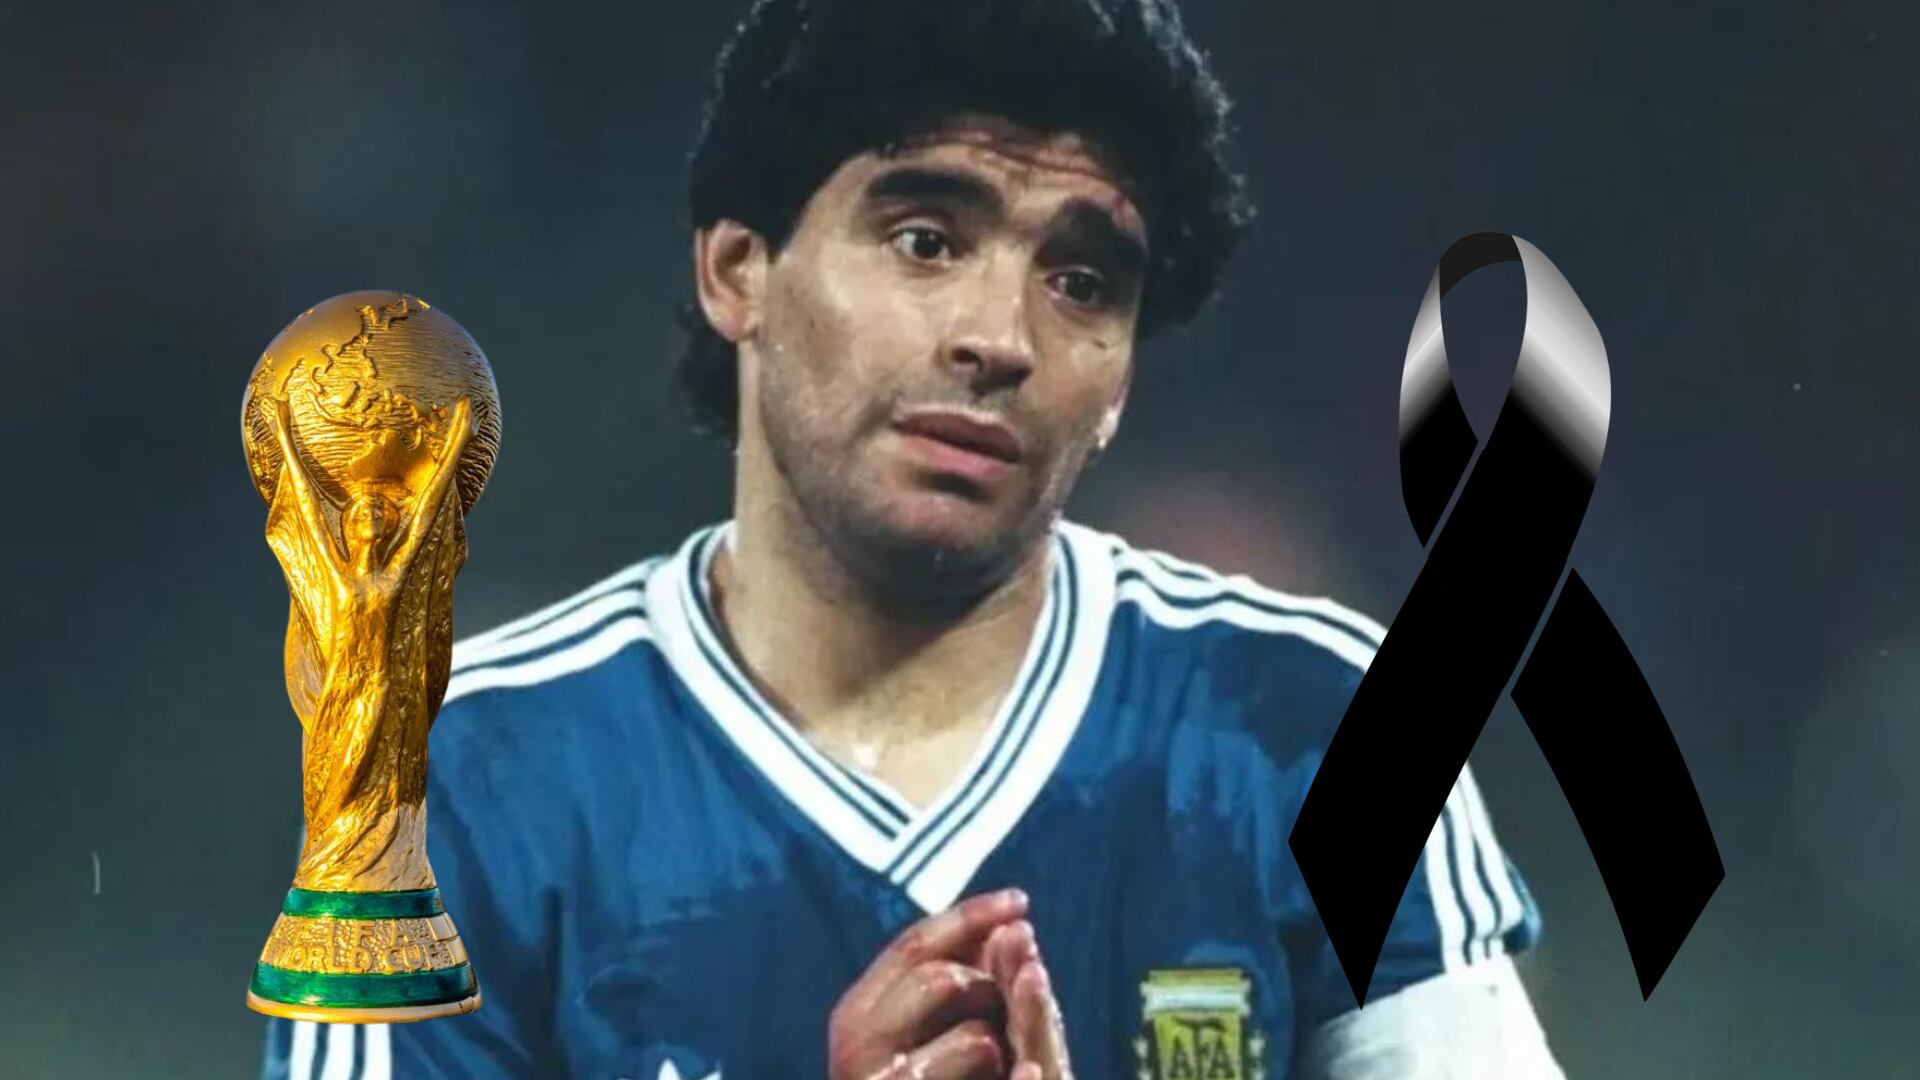  Hizo llorar a Maradona, fue campeón mundial y de Europa, ahora pierde la vida